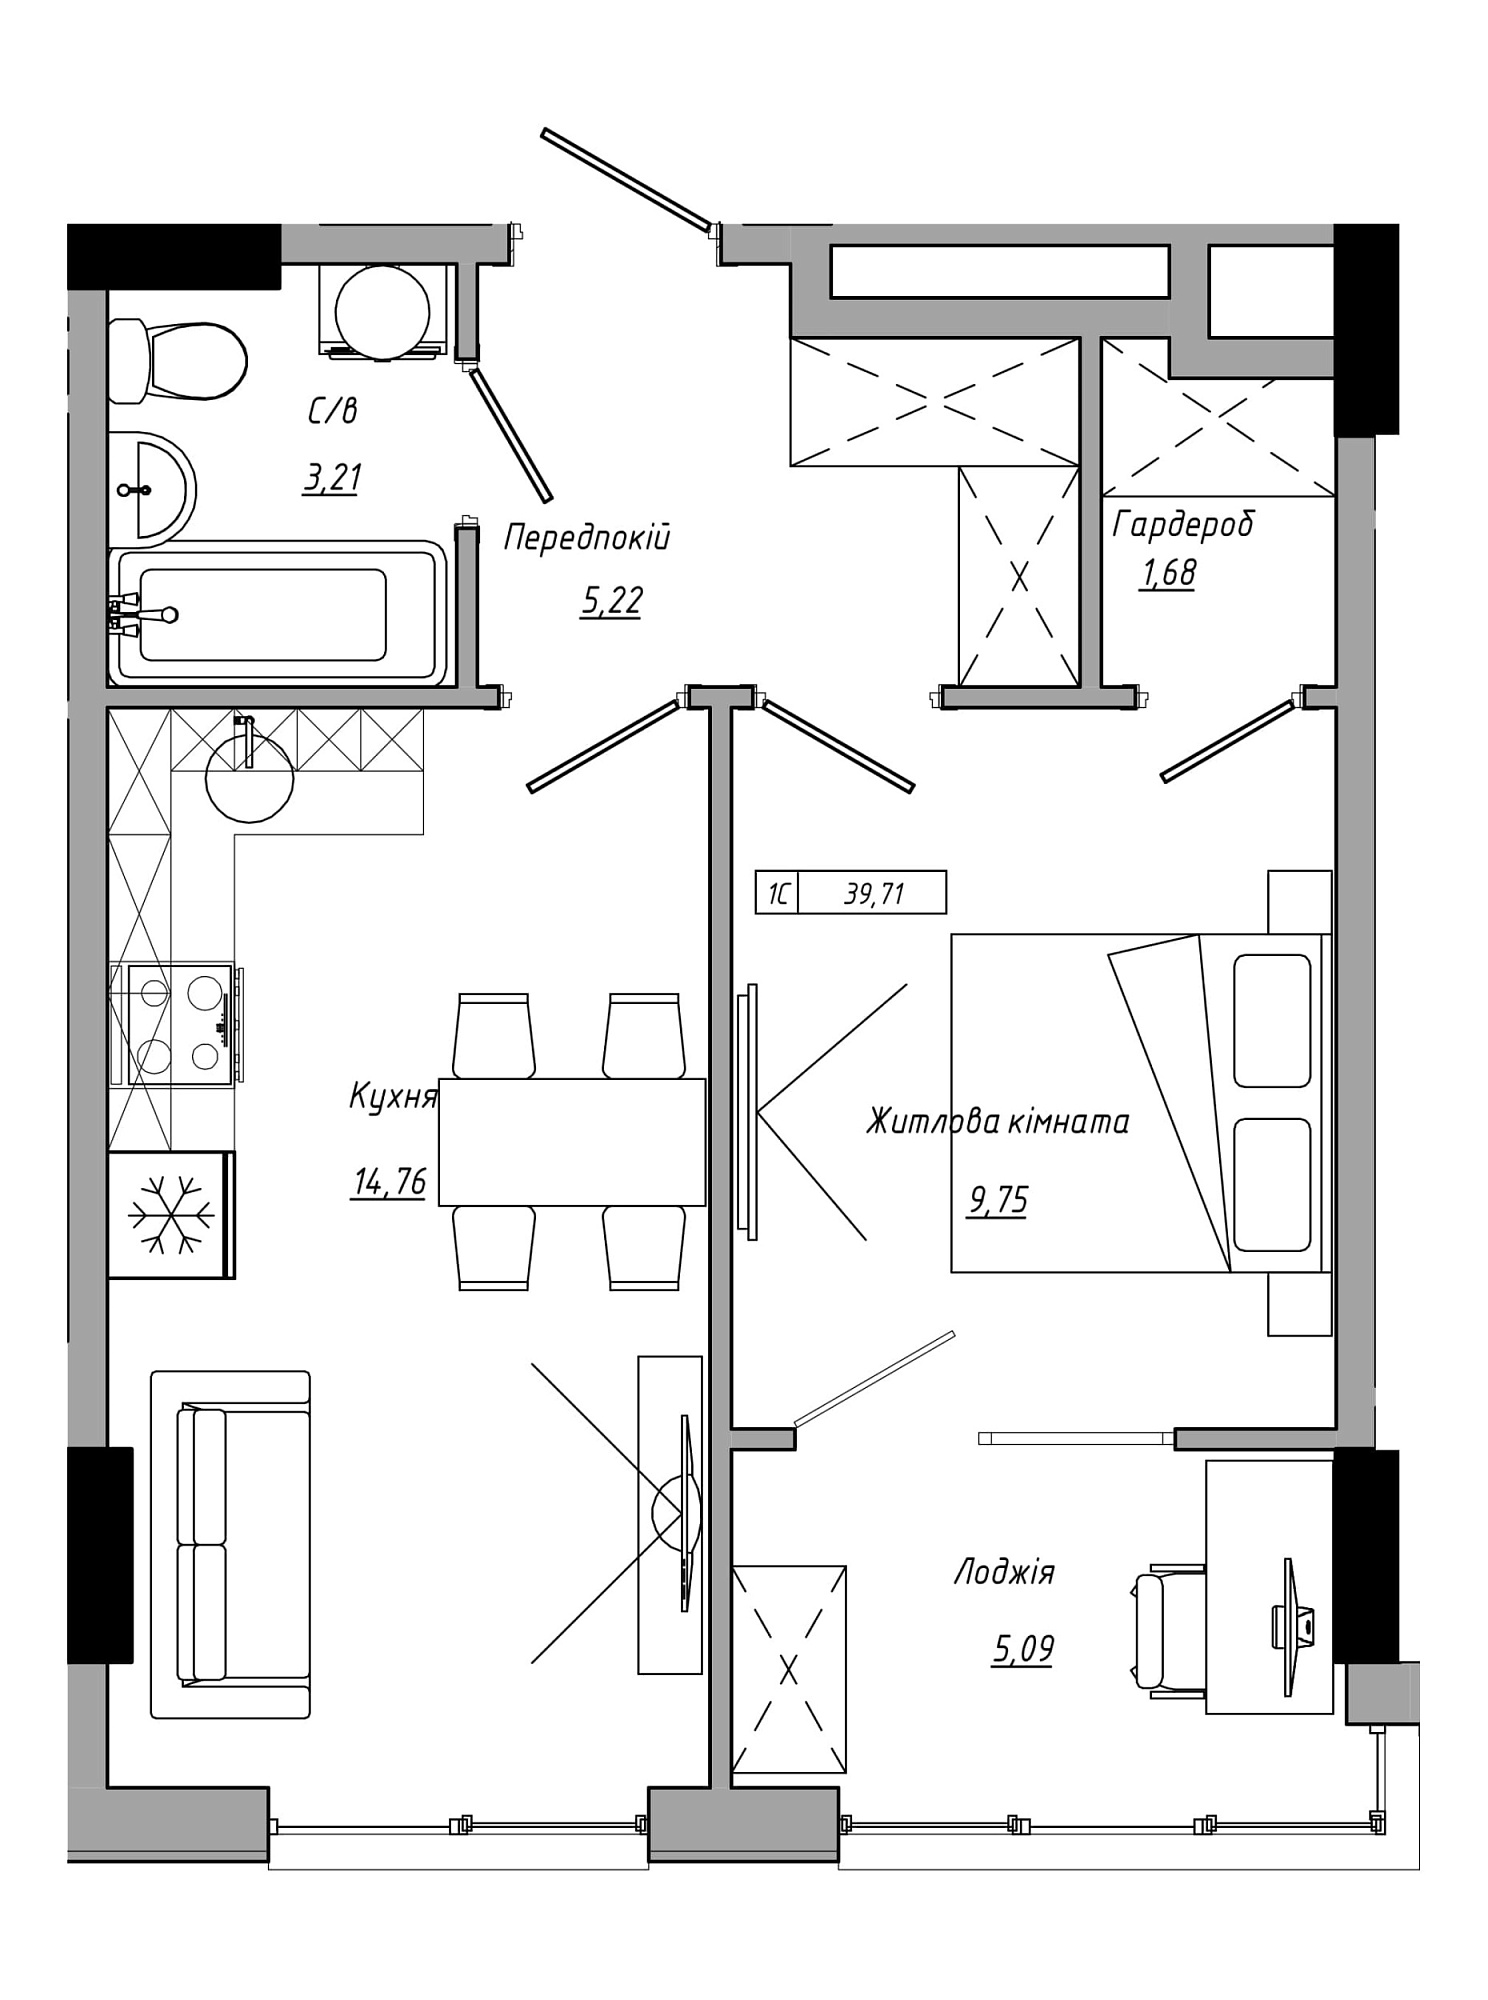 Планування 1-к квартира площею 39.71м2, AB-21-10/00021.